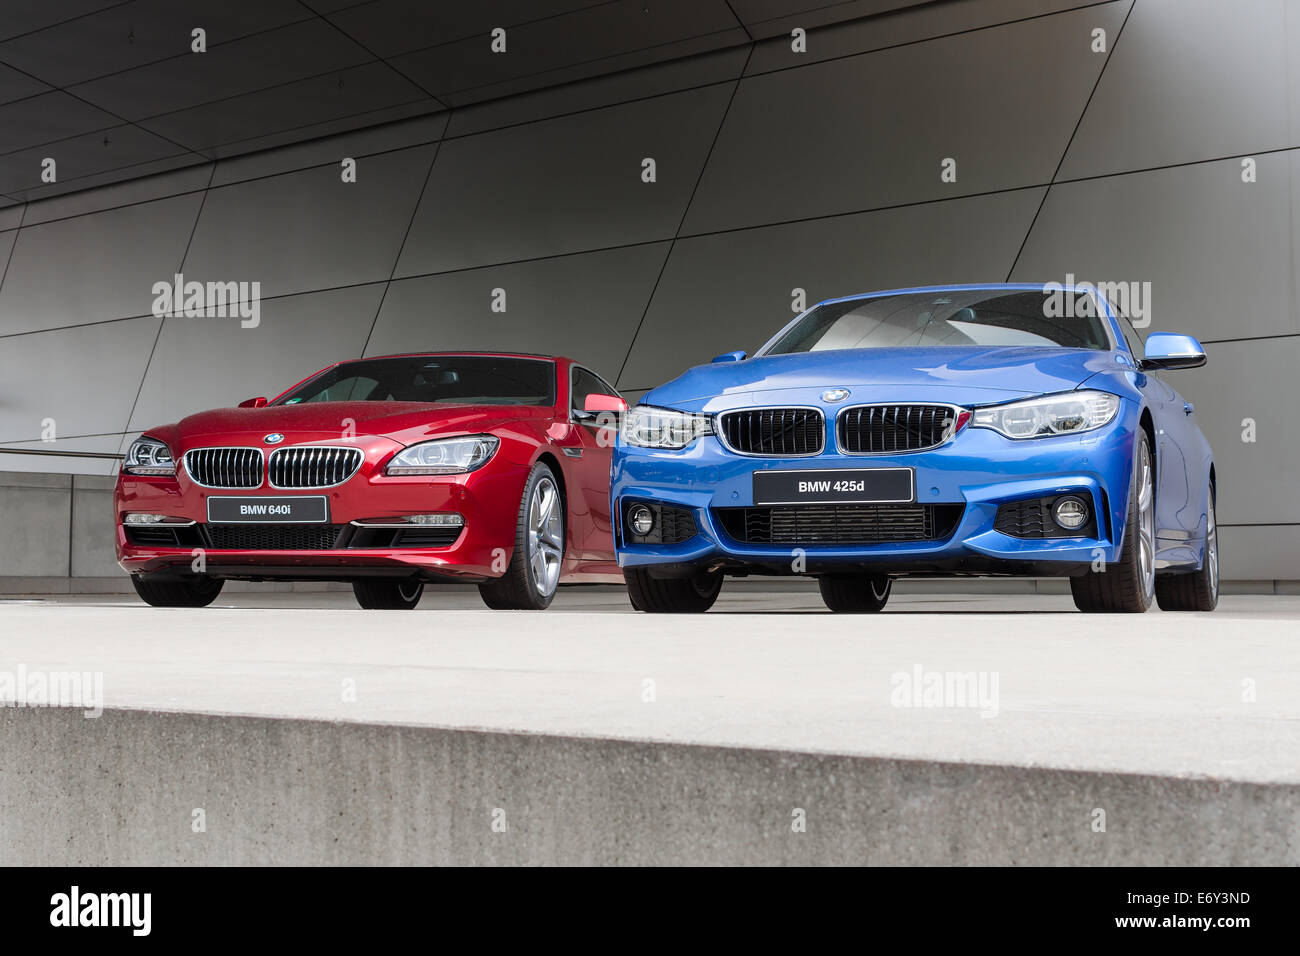 München, Deutschland - 9. August 2014: Neue moderne Modelle der executive Business Klasse BMW Autos. 640i rote und blaue 425d nach Regen nass Stockfoto